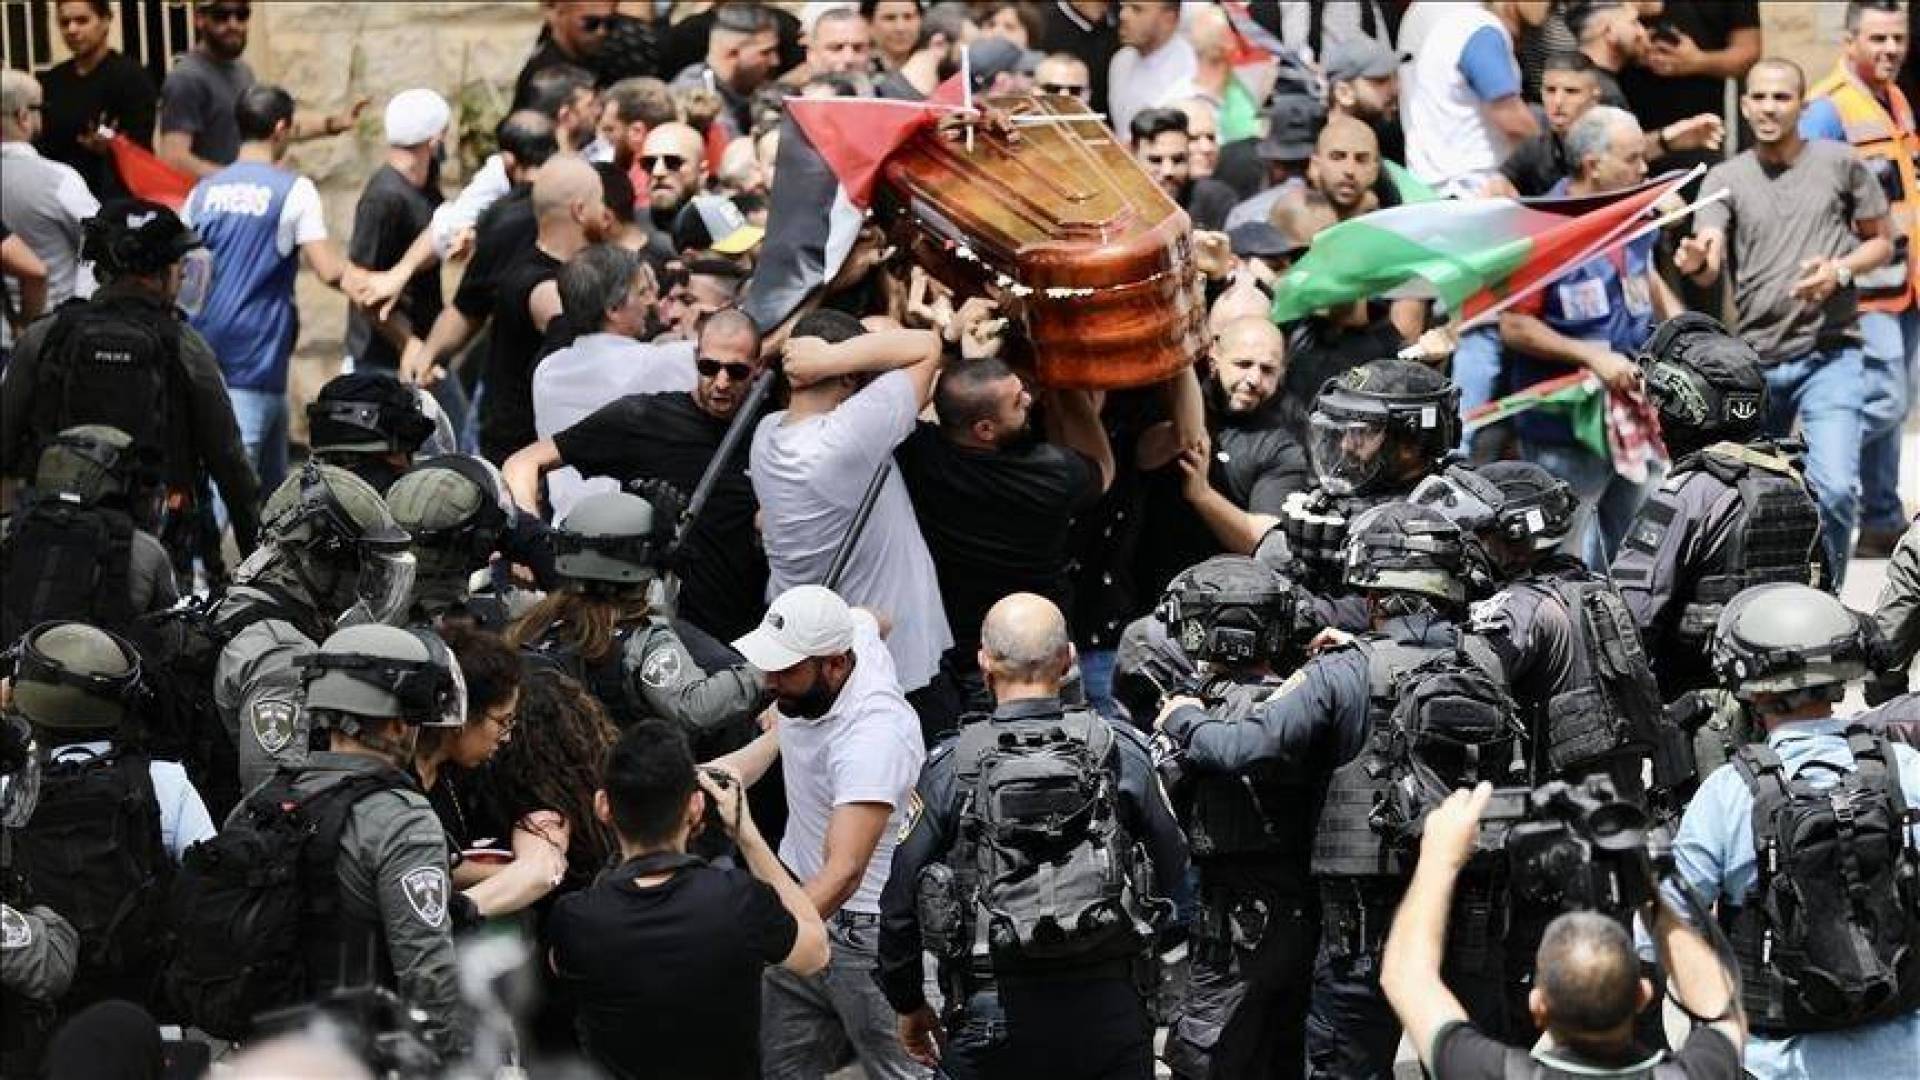 جدعون ليفي: الشرطة التي تعتدي على جنازة بطلة شعبية مثل شيرين أبو عاقلة هي عصابة وحوش